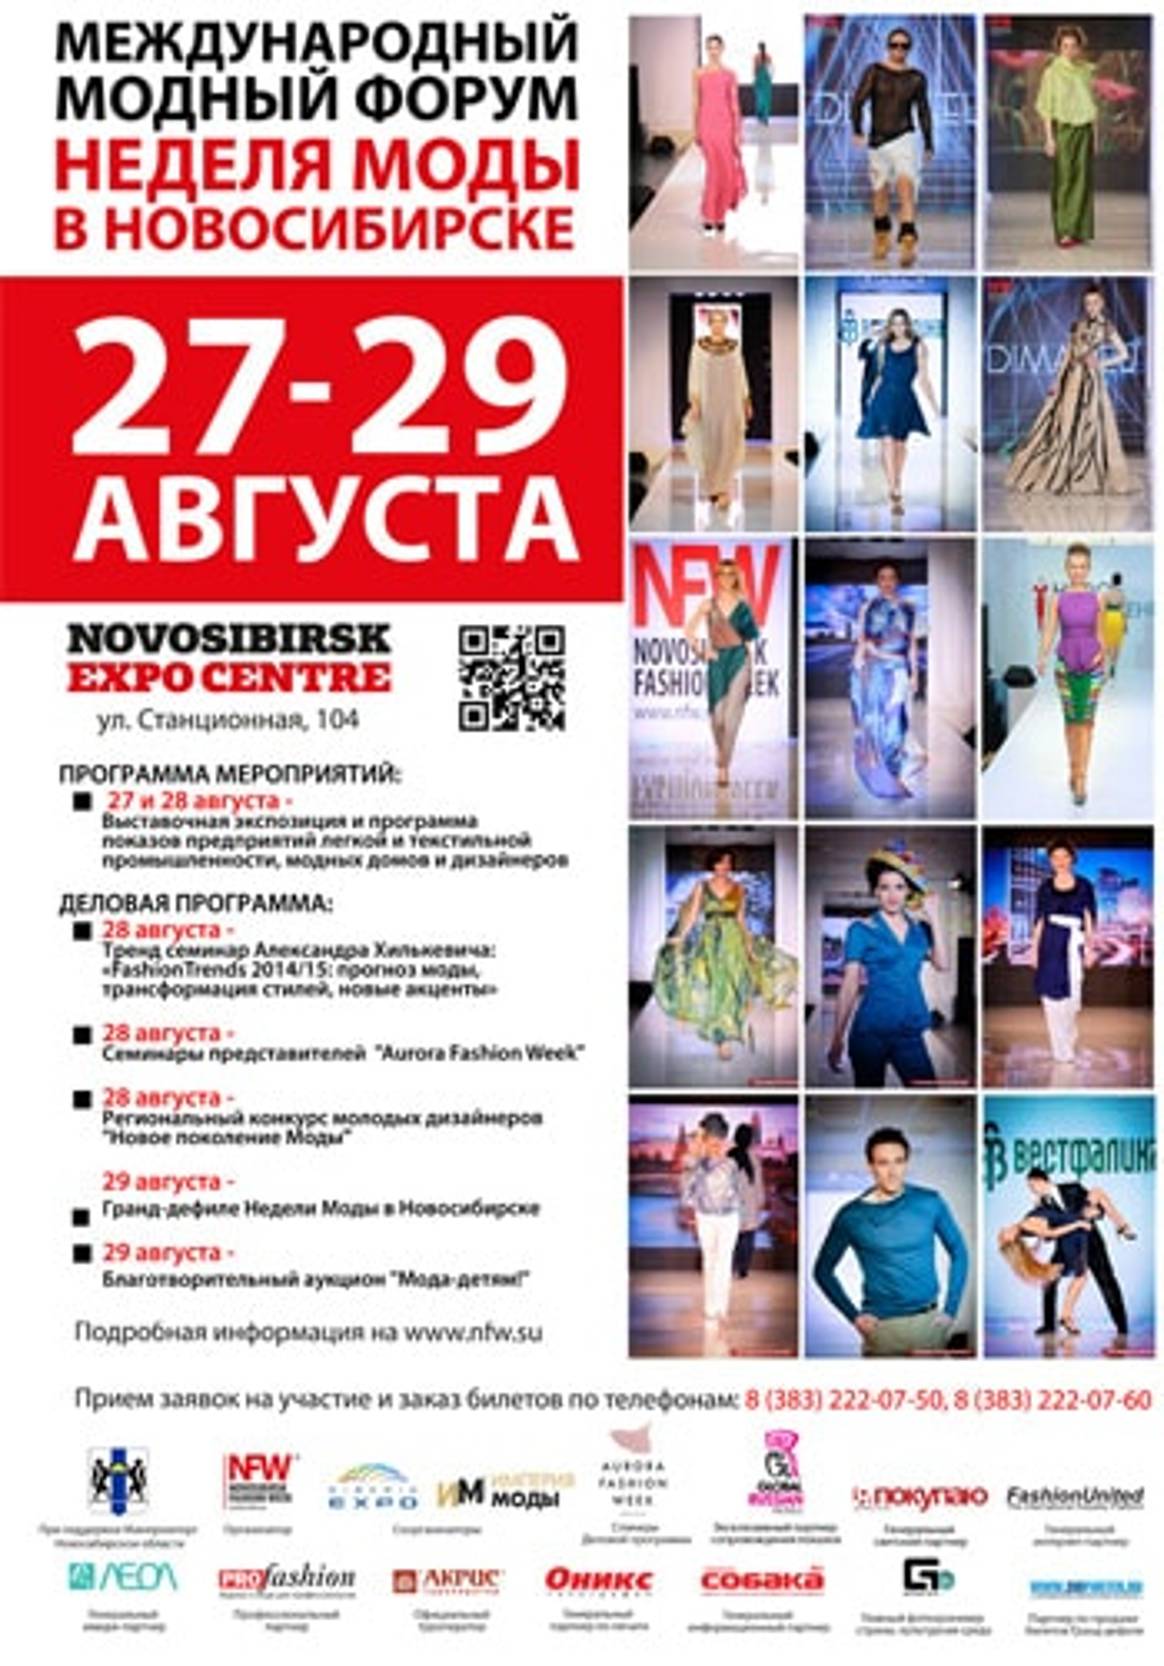 Деловая программа Недели моды в Новосибирске